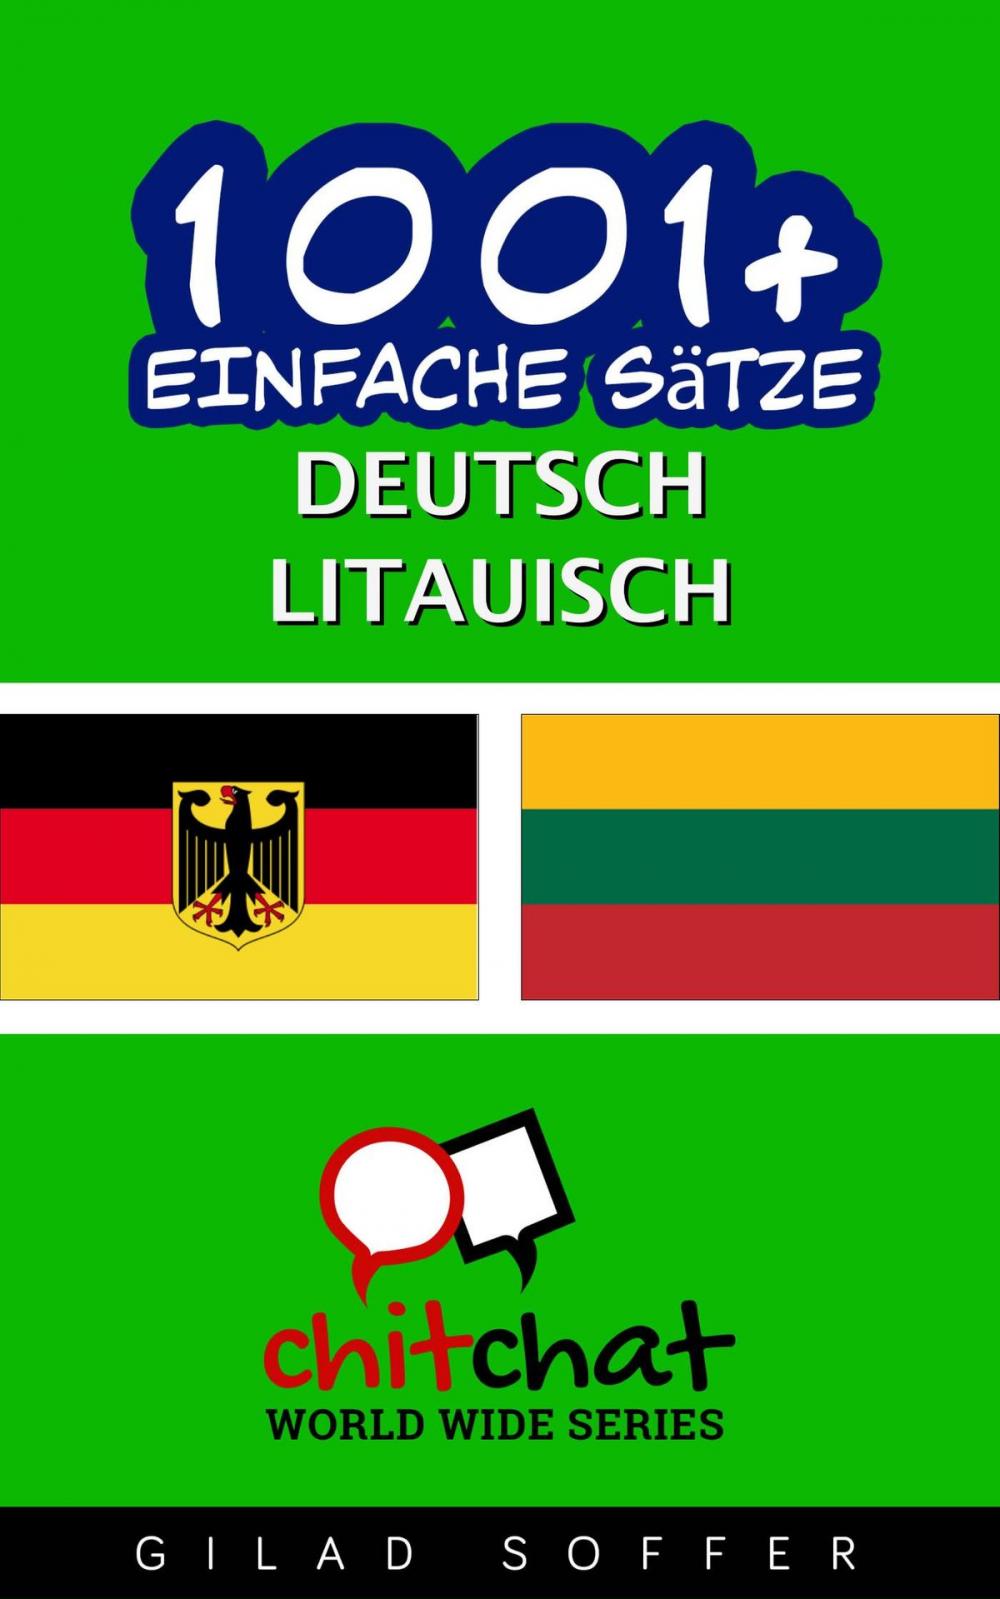 Big bigCover of 1001+ Einfache Sätze Deutsch - Litauisch